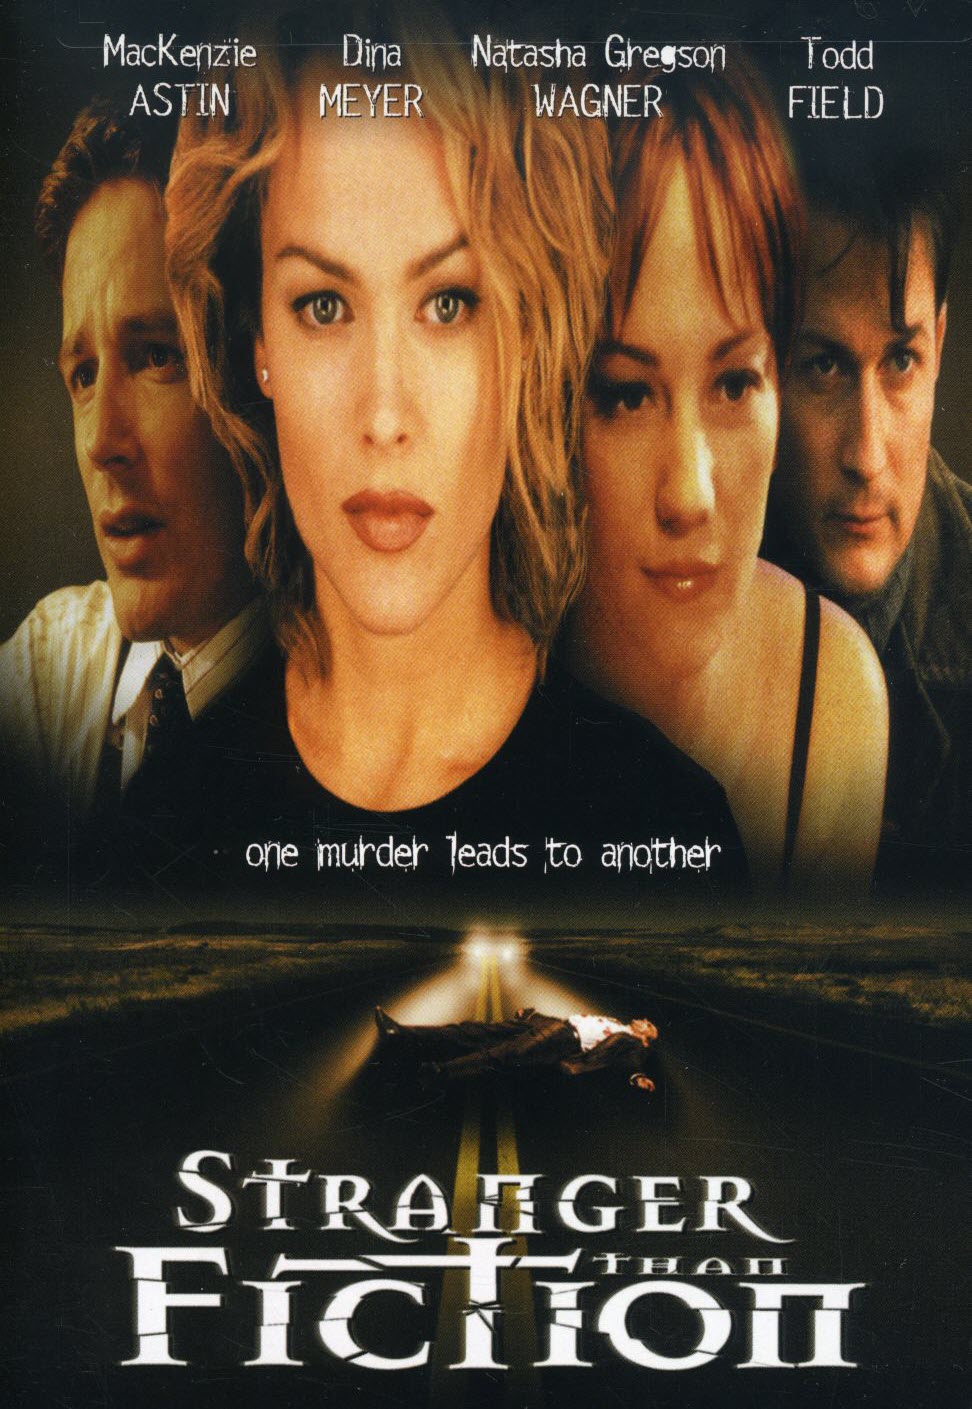 Stranger Than Fiction (2000) starring Mackenzie Astin on DVD on DVD